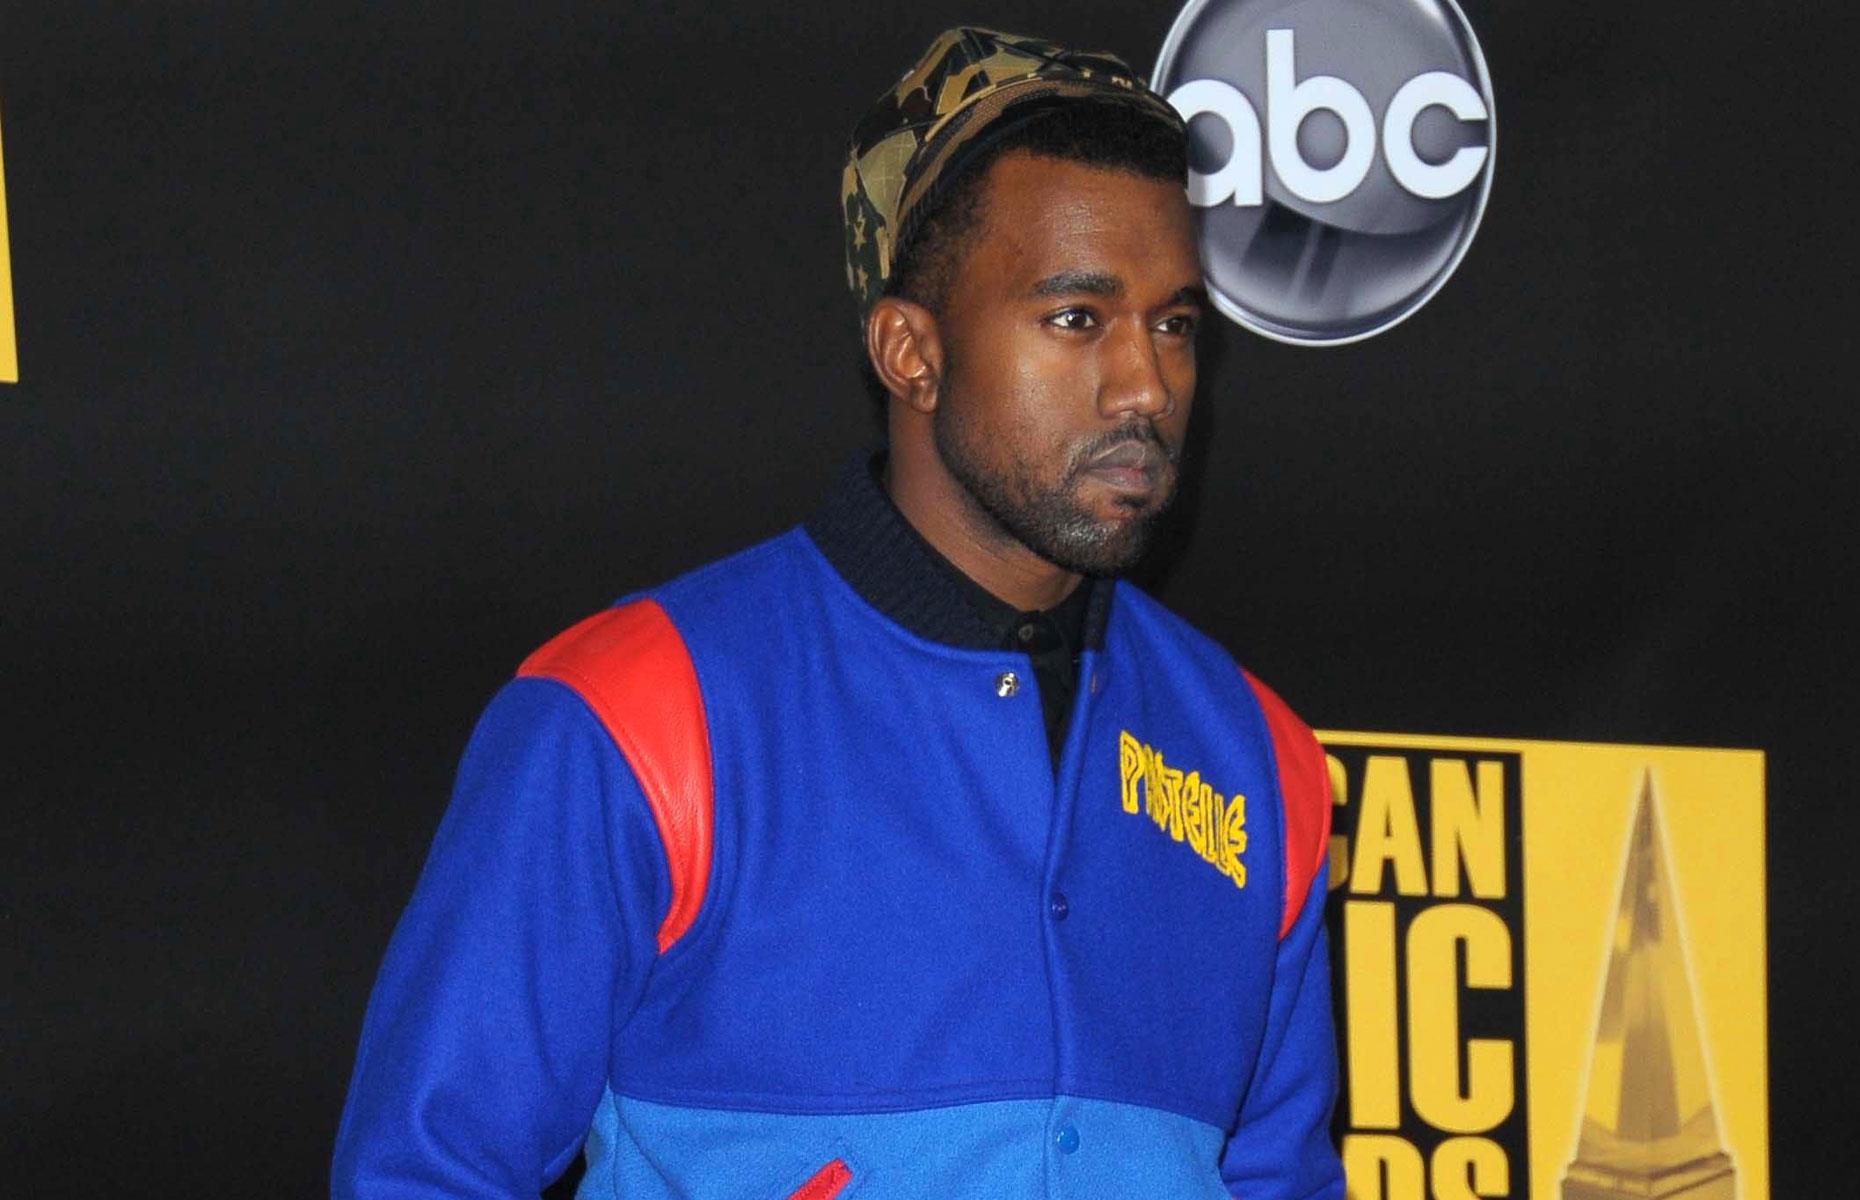 Kanye West's Pastelle fashion line